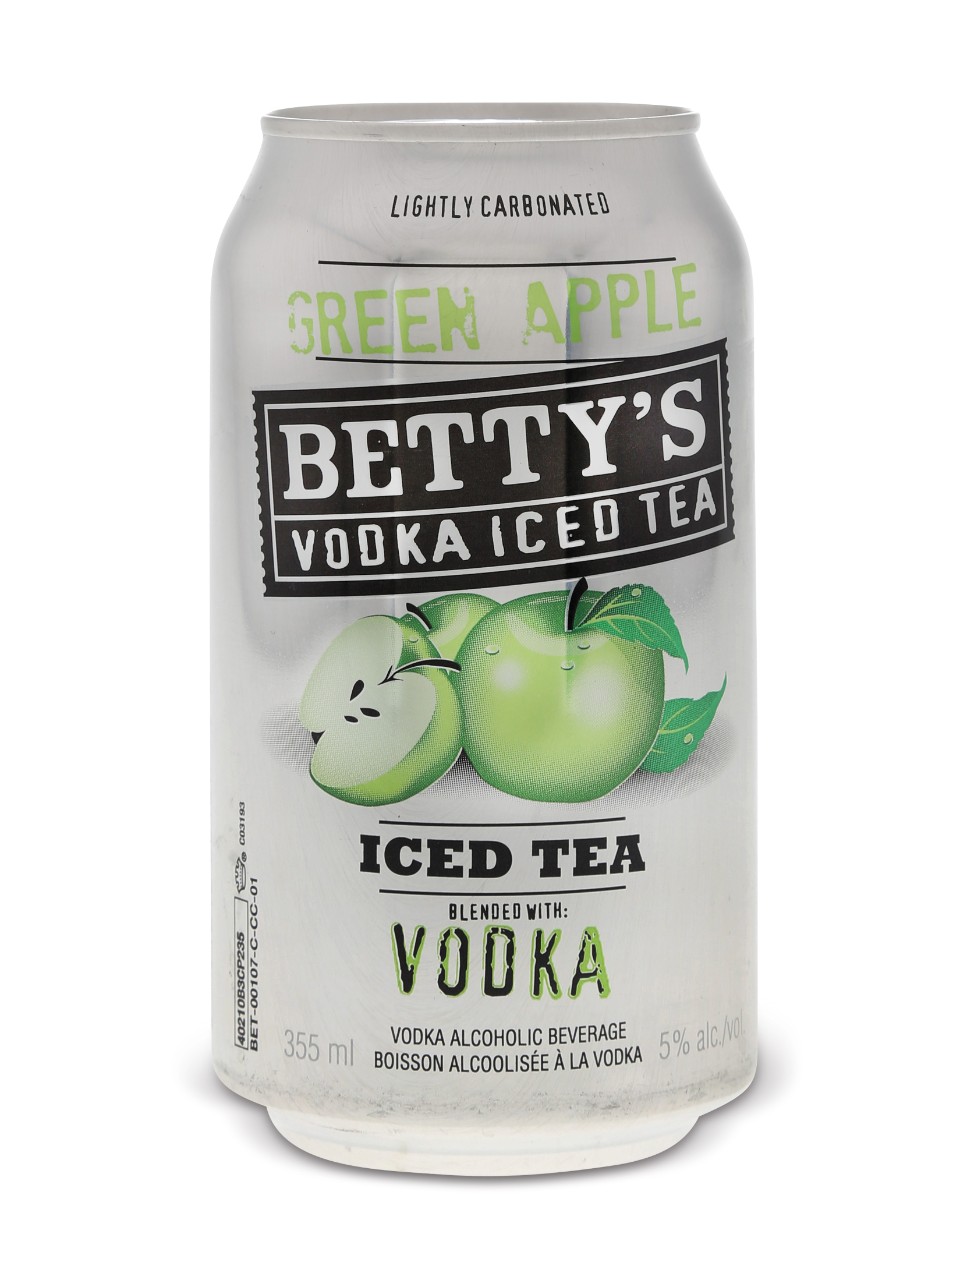 Betty's Green Apple Vodka Iced Tea